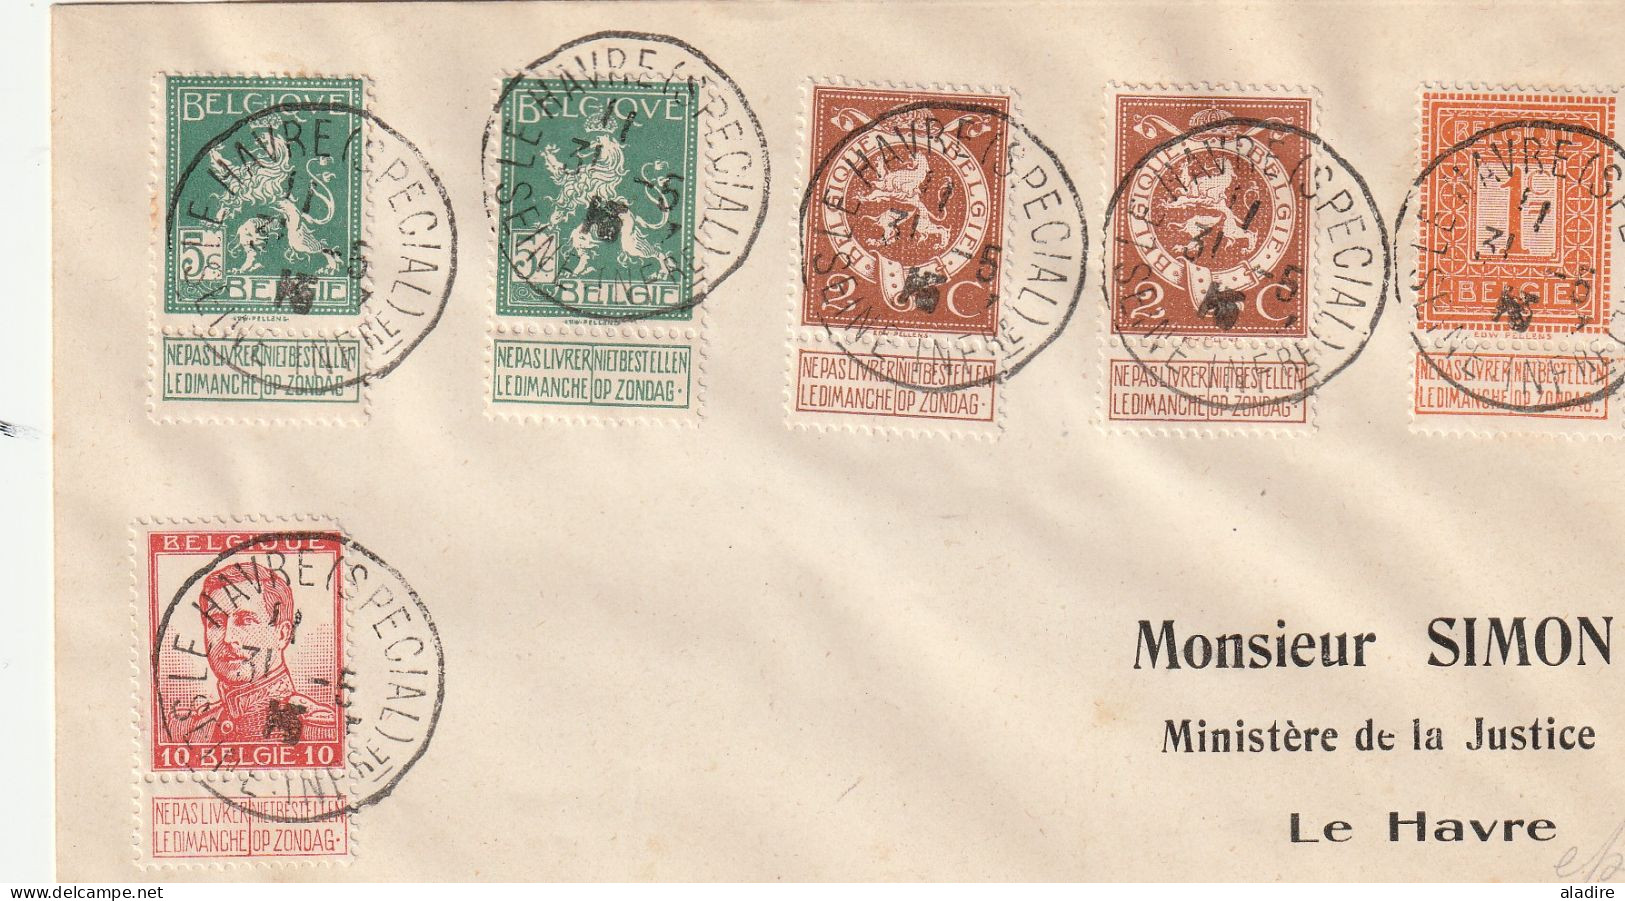 1914/1915 - Collection de 14 enveloppes et cartes - LE HAVRE SPECIAL - gouvernement belge en exil à Sainte Adresse